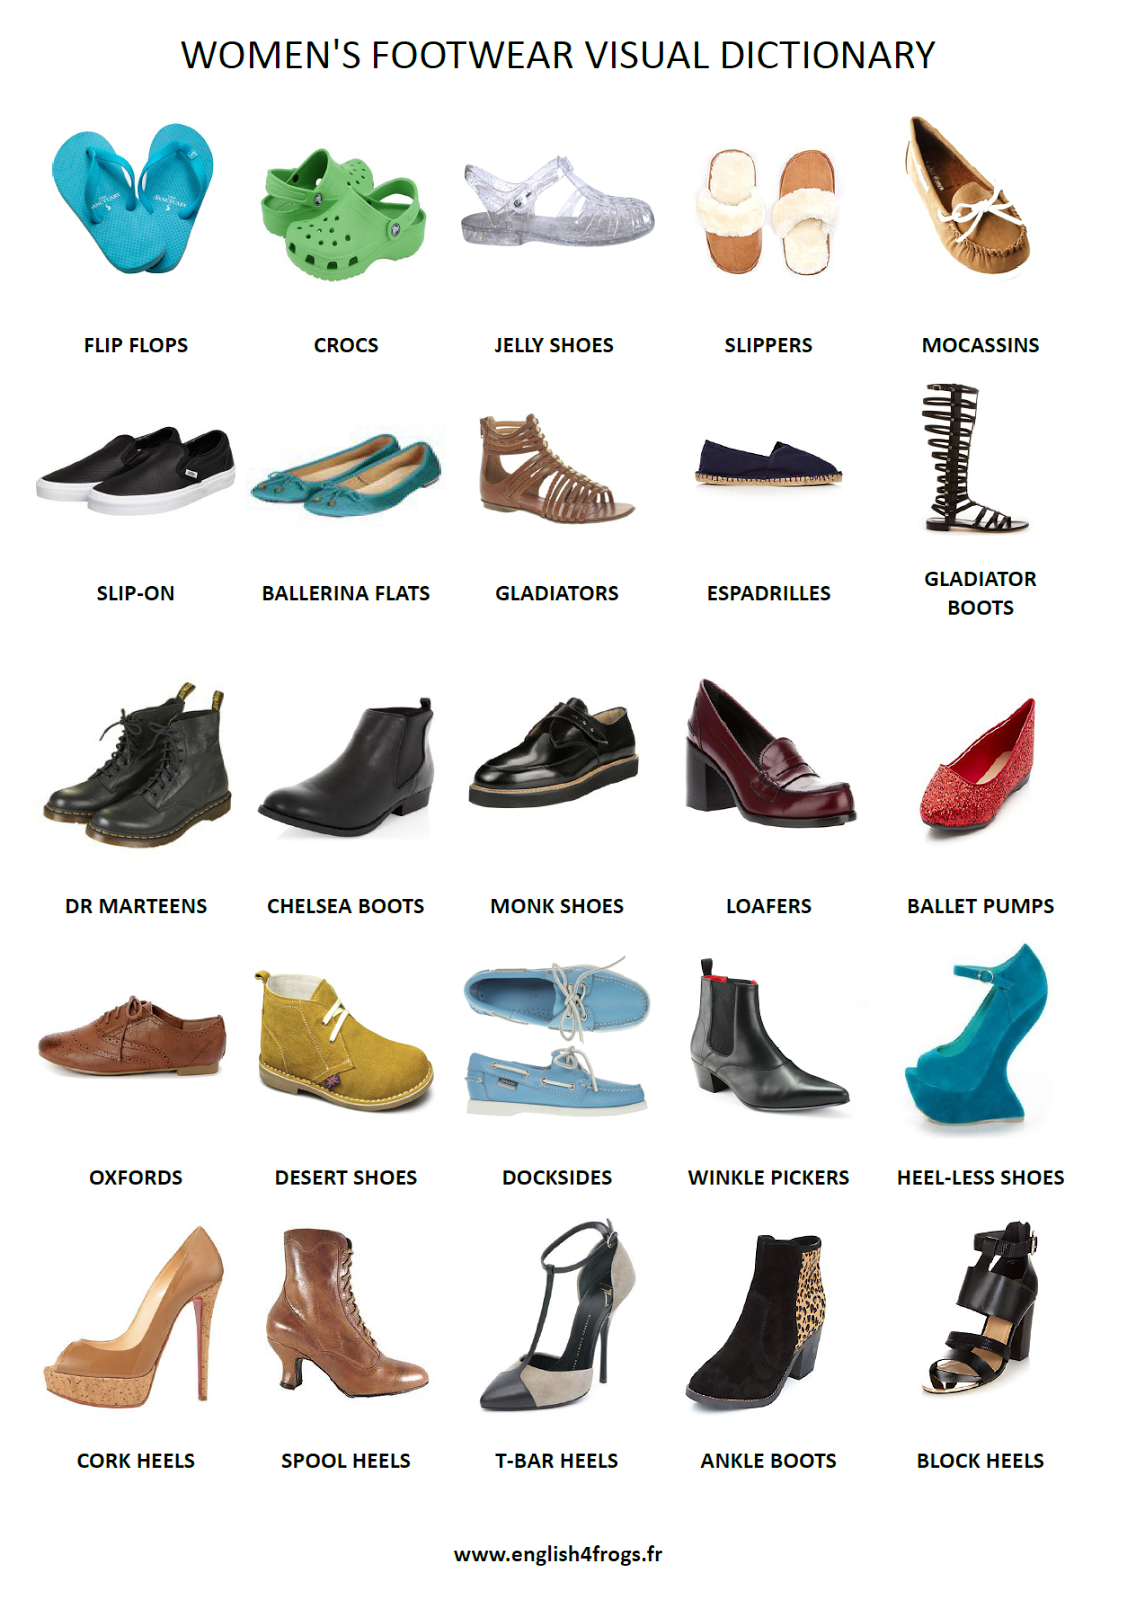 Название летней женской обуви. Разновидность женской обуви. Современная обувь. Название туфель женских. Типы женской обуви.